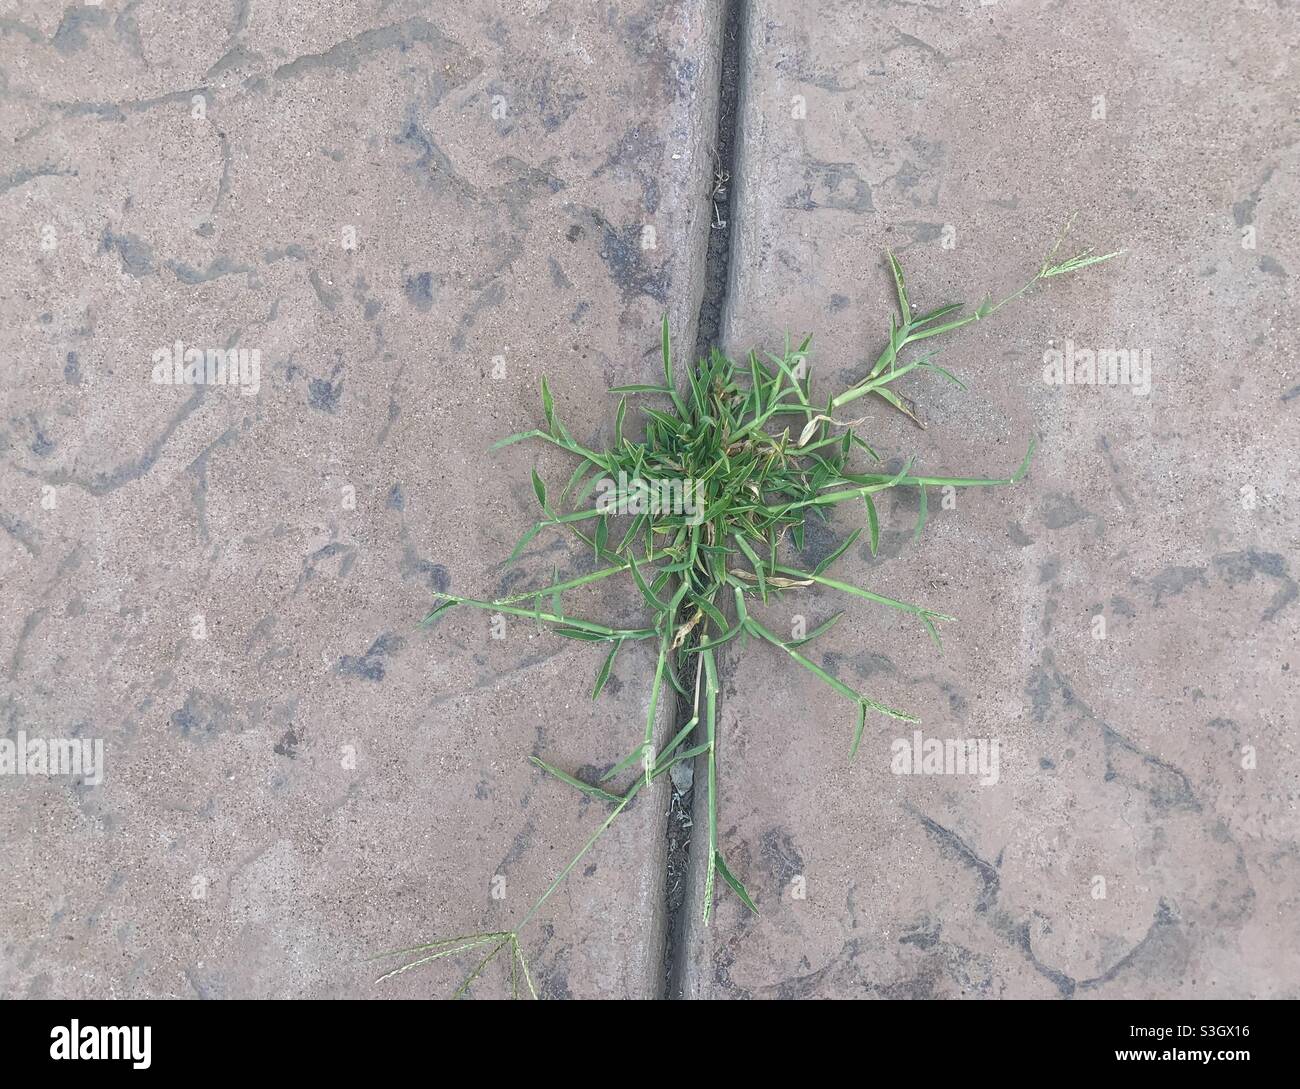 Les mauvaises herbes qui poussent dans les fissures du ciment à l'extérieur sur le trottoir Banque D'Images